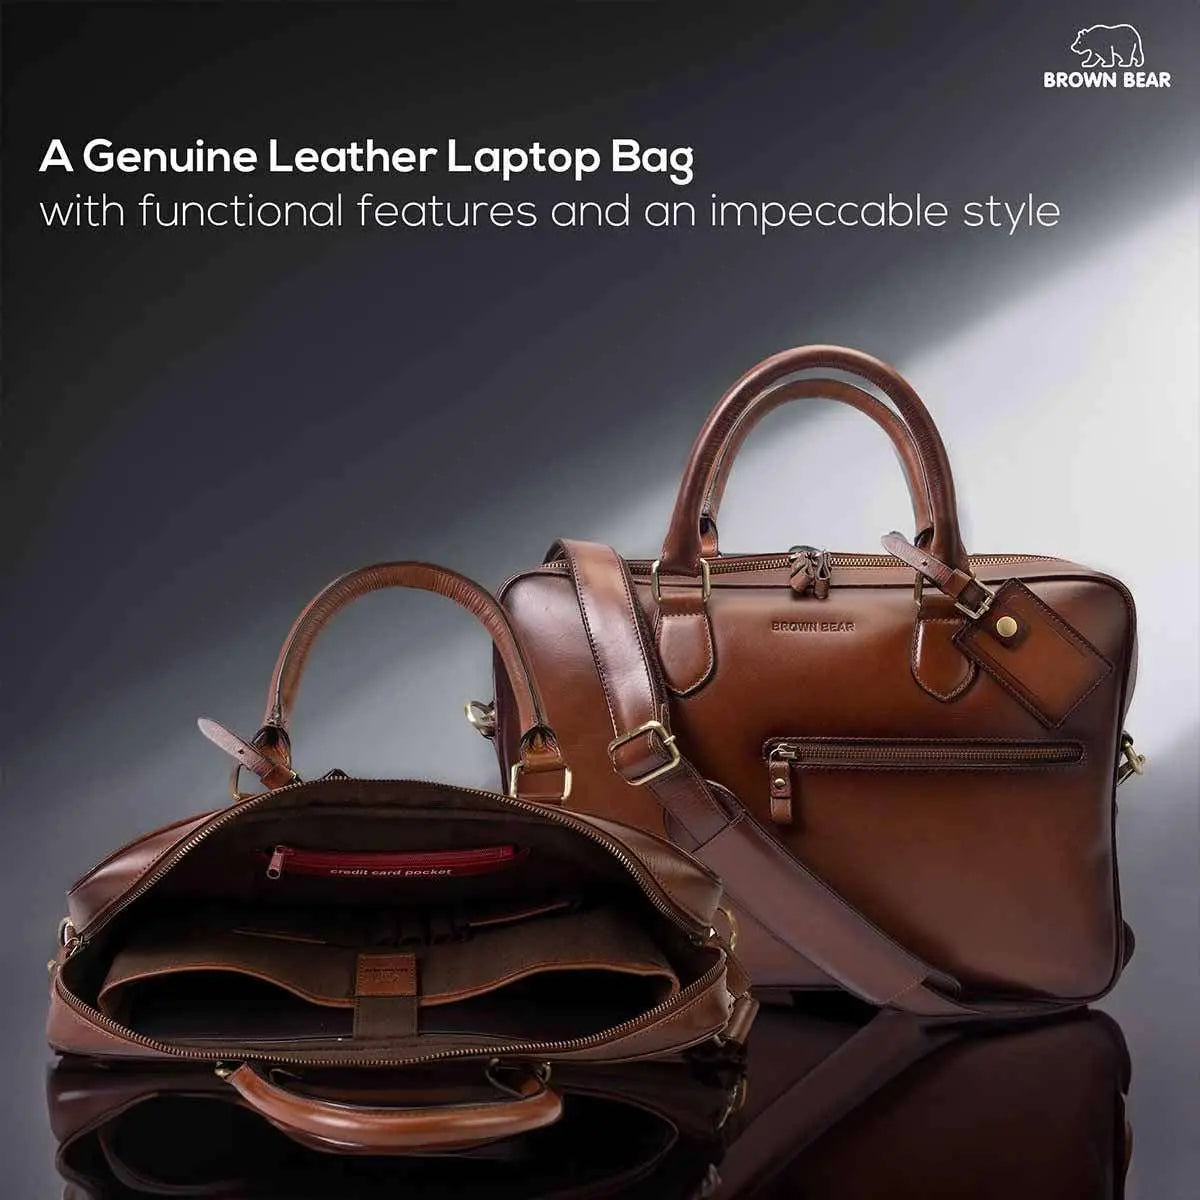 Box Shoulder Bag & Handbag in Black: Luna – Bicyclist: Handmade Leather  Goods